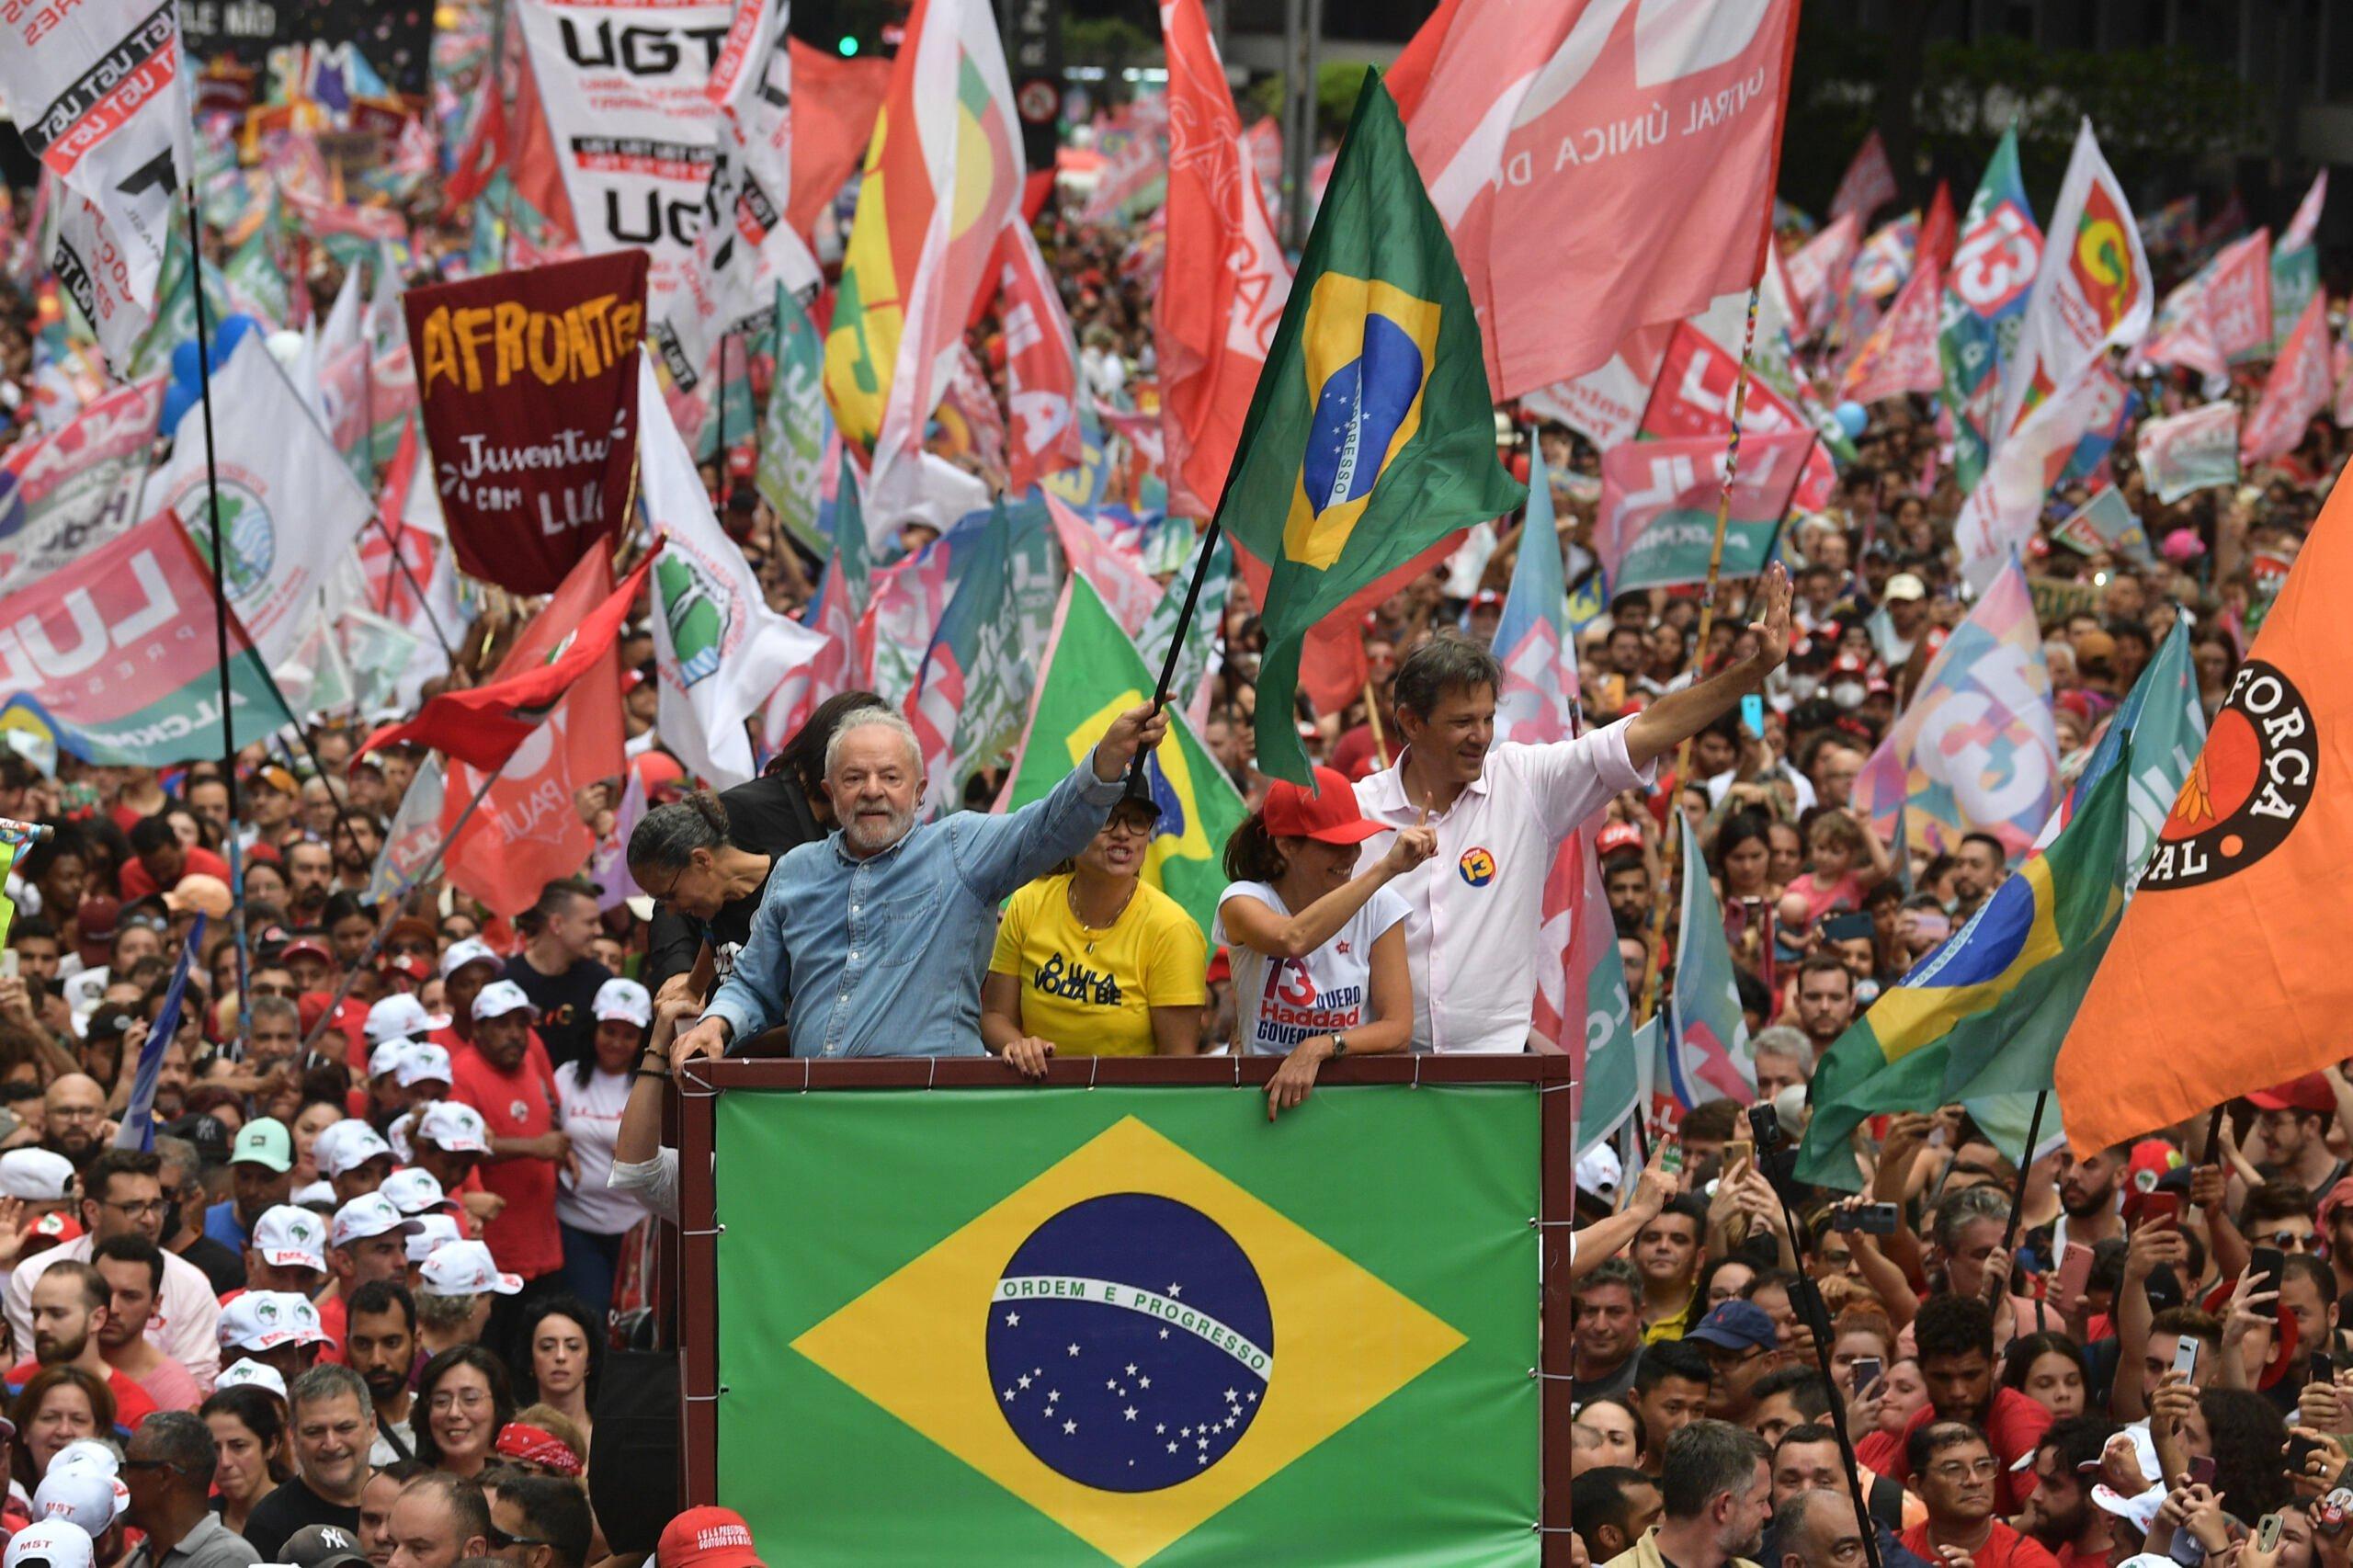 Lula na trybunie, w tle wiwatujące tłumy